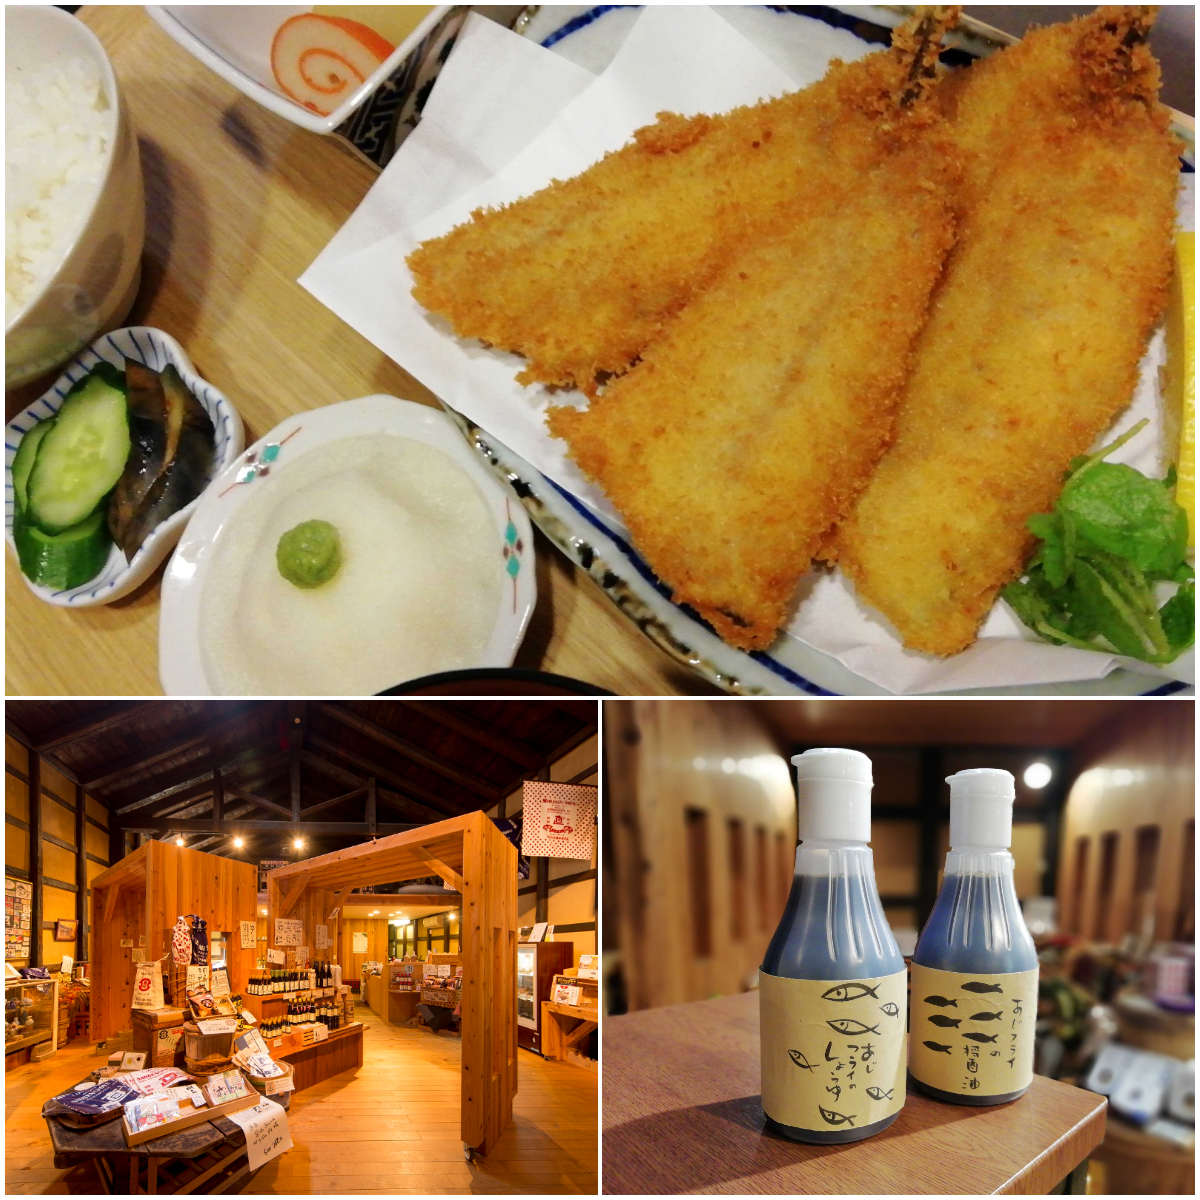 【金沢市】醤油処『直江屋源兵衛』がリニューアルし、新たな調味料を味わえるランチの提供をスタート。